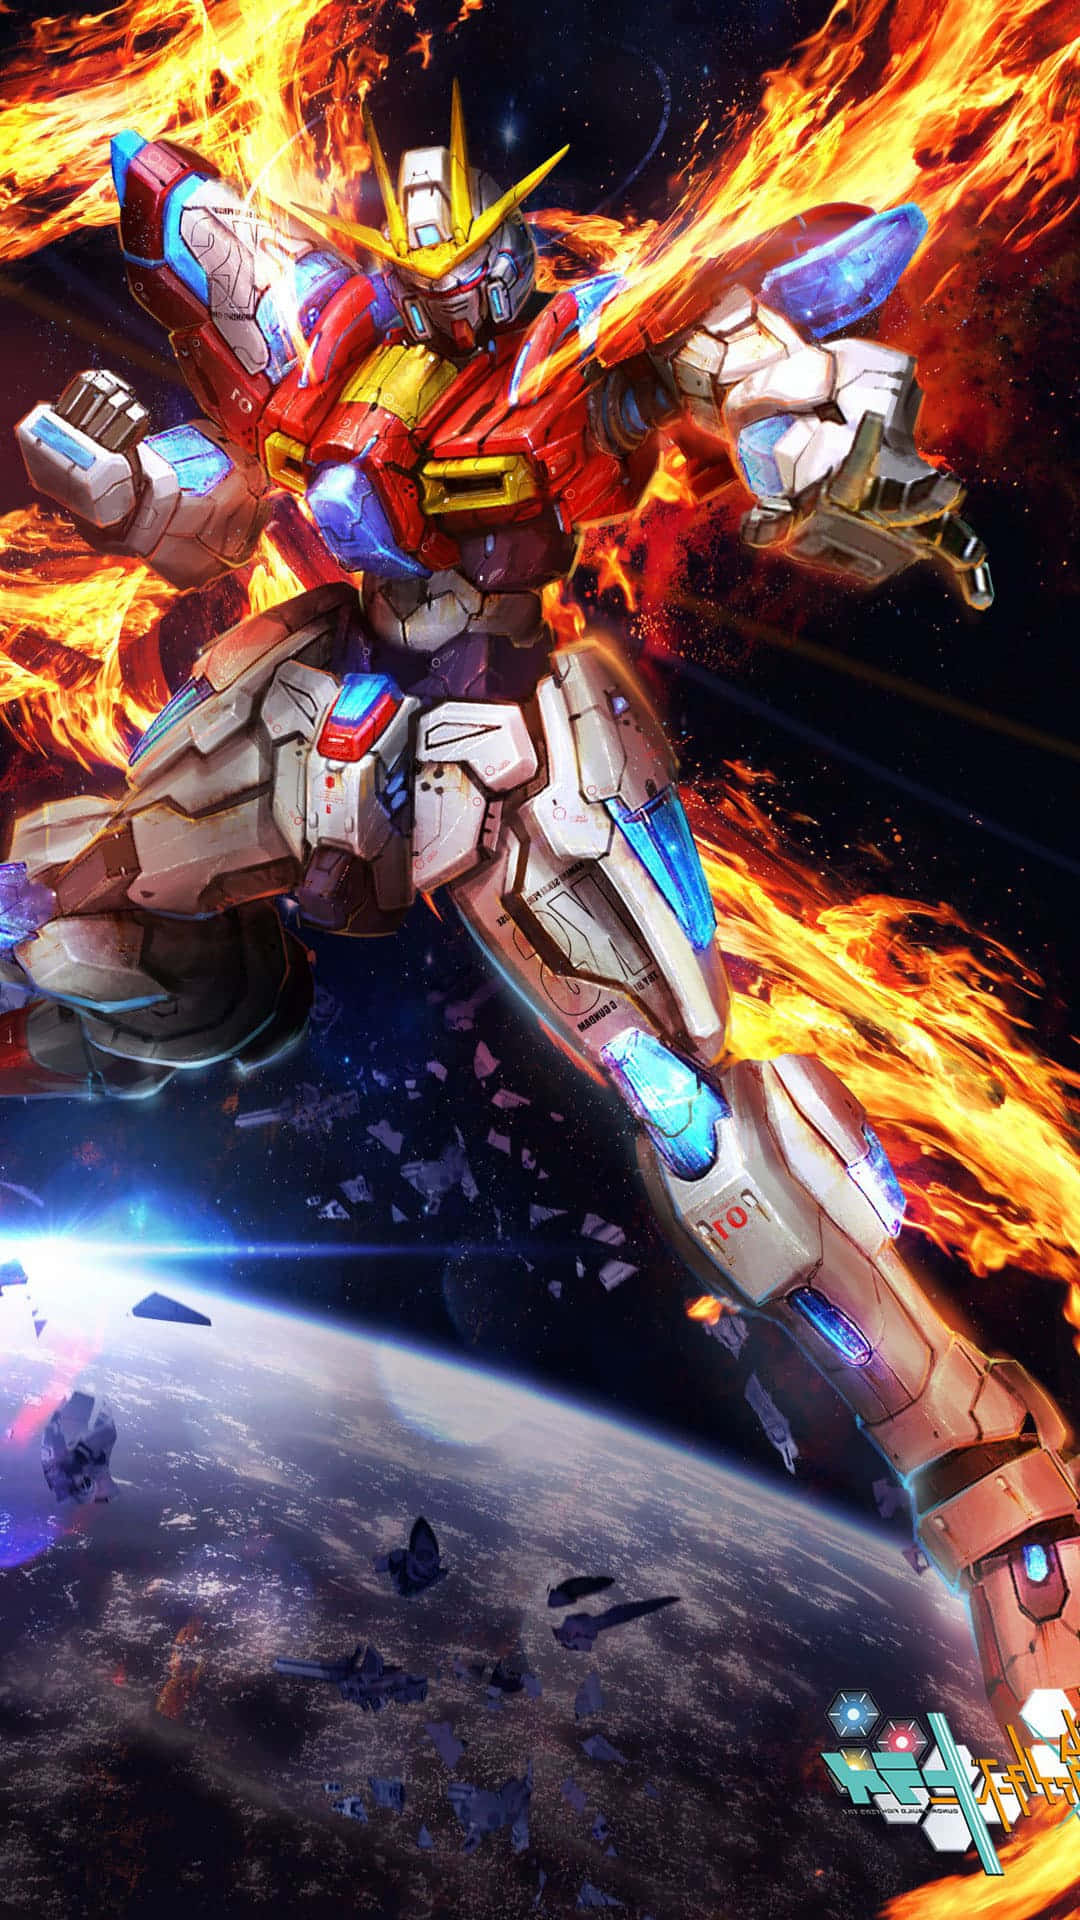 Imagenla Guerra De Los Robots De Batalla: Confrontación De Los Guerreros Gundam.